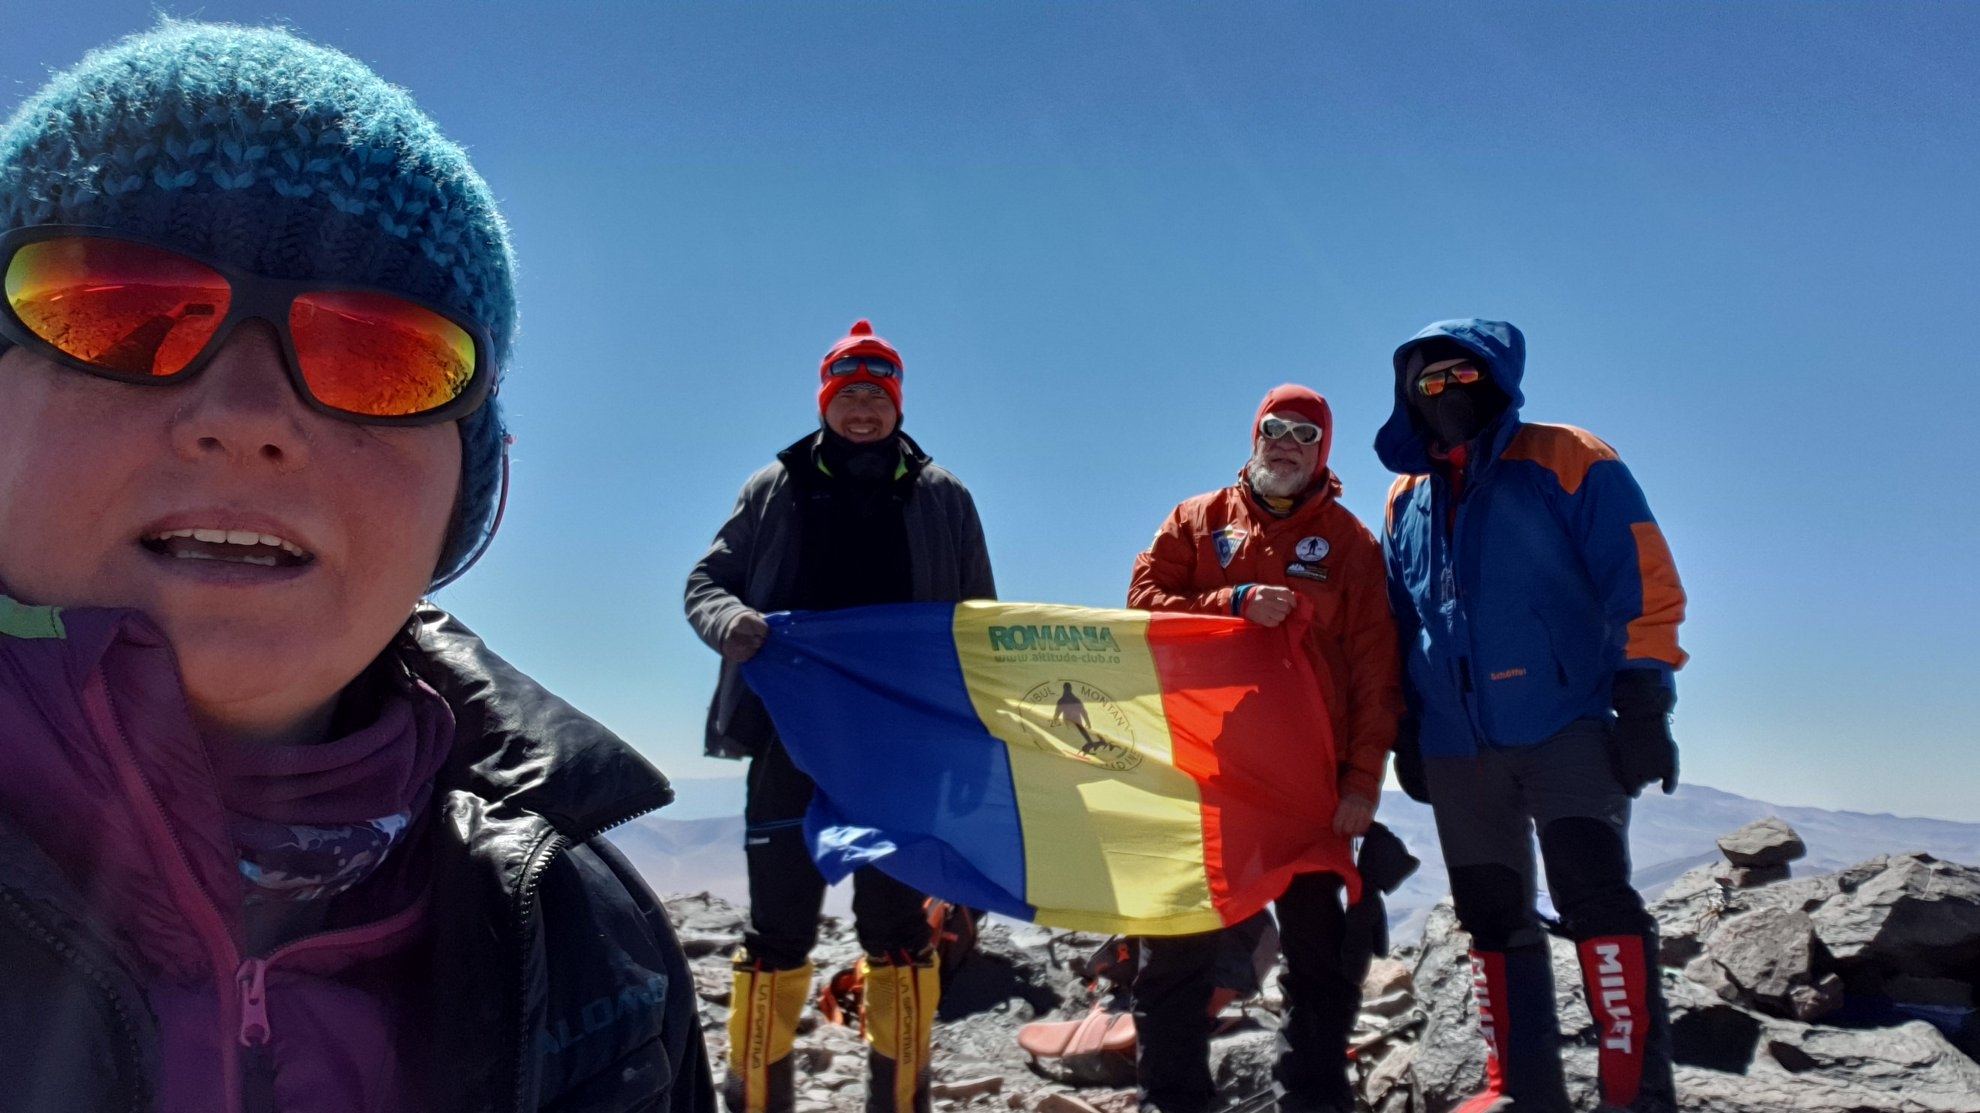 Cinci alpiniști români au atins vârful celui mai înalt vulcan din lume